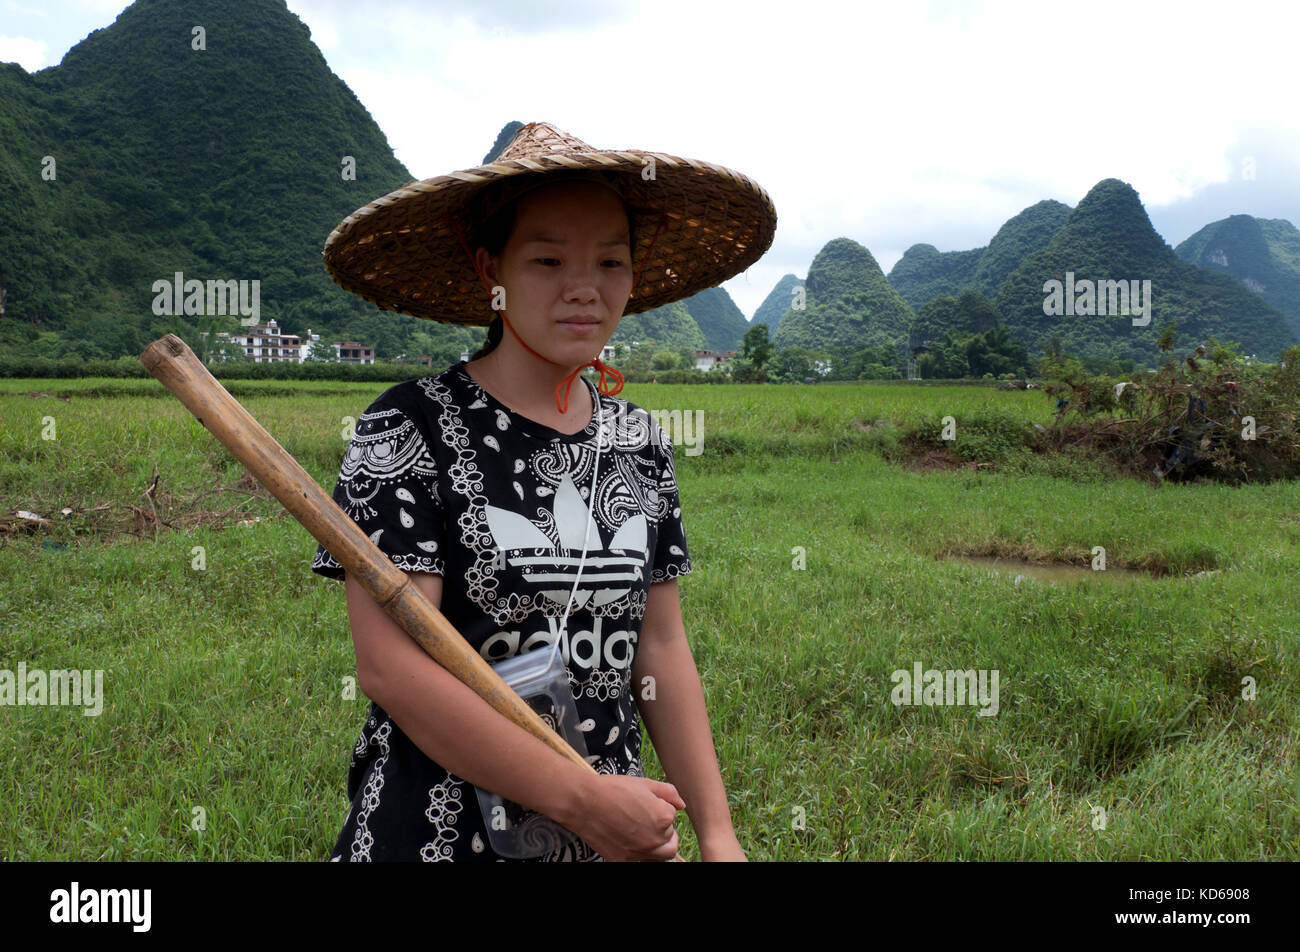 Portrait d'une jeune femme chinoise travaillant comme paysanne dans le rizières de la campagne de Yangshuo, Guangxi, Chine, Asie. Fille comme agricultrice de riz souriant Banque D'Images